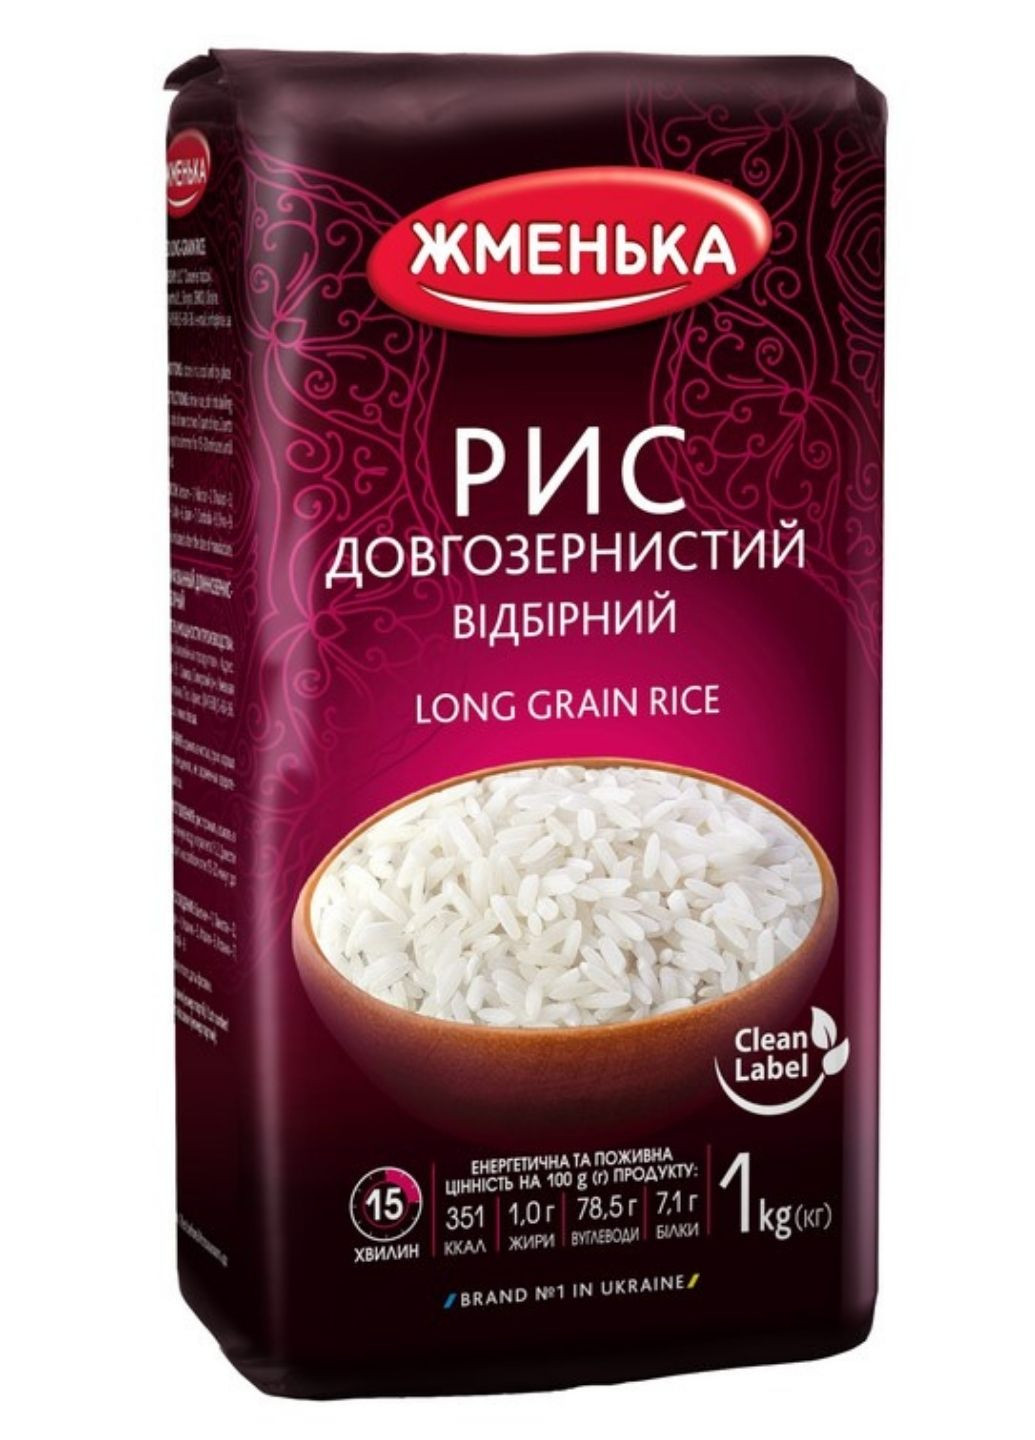 Рис добірний Преміум 1 кг Жменька (244010508)